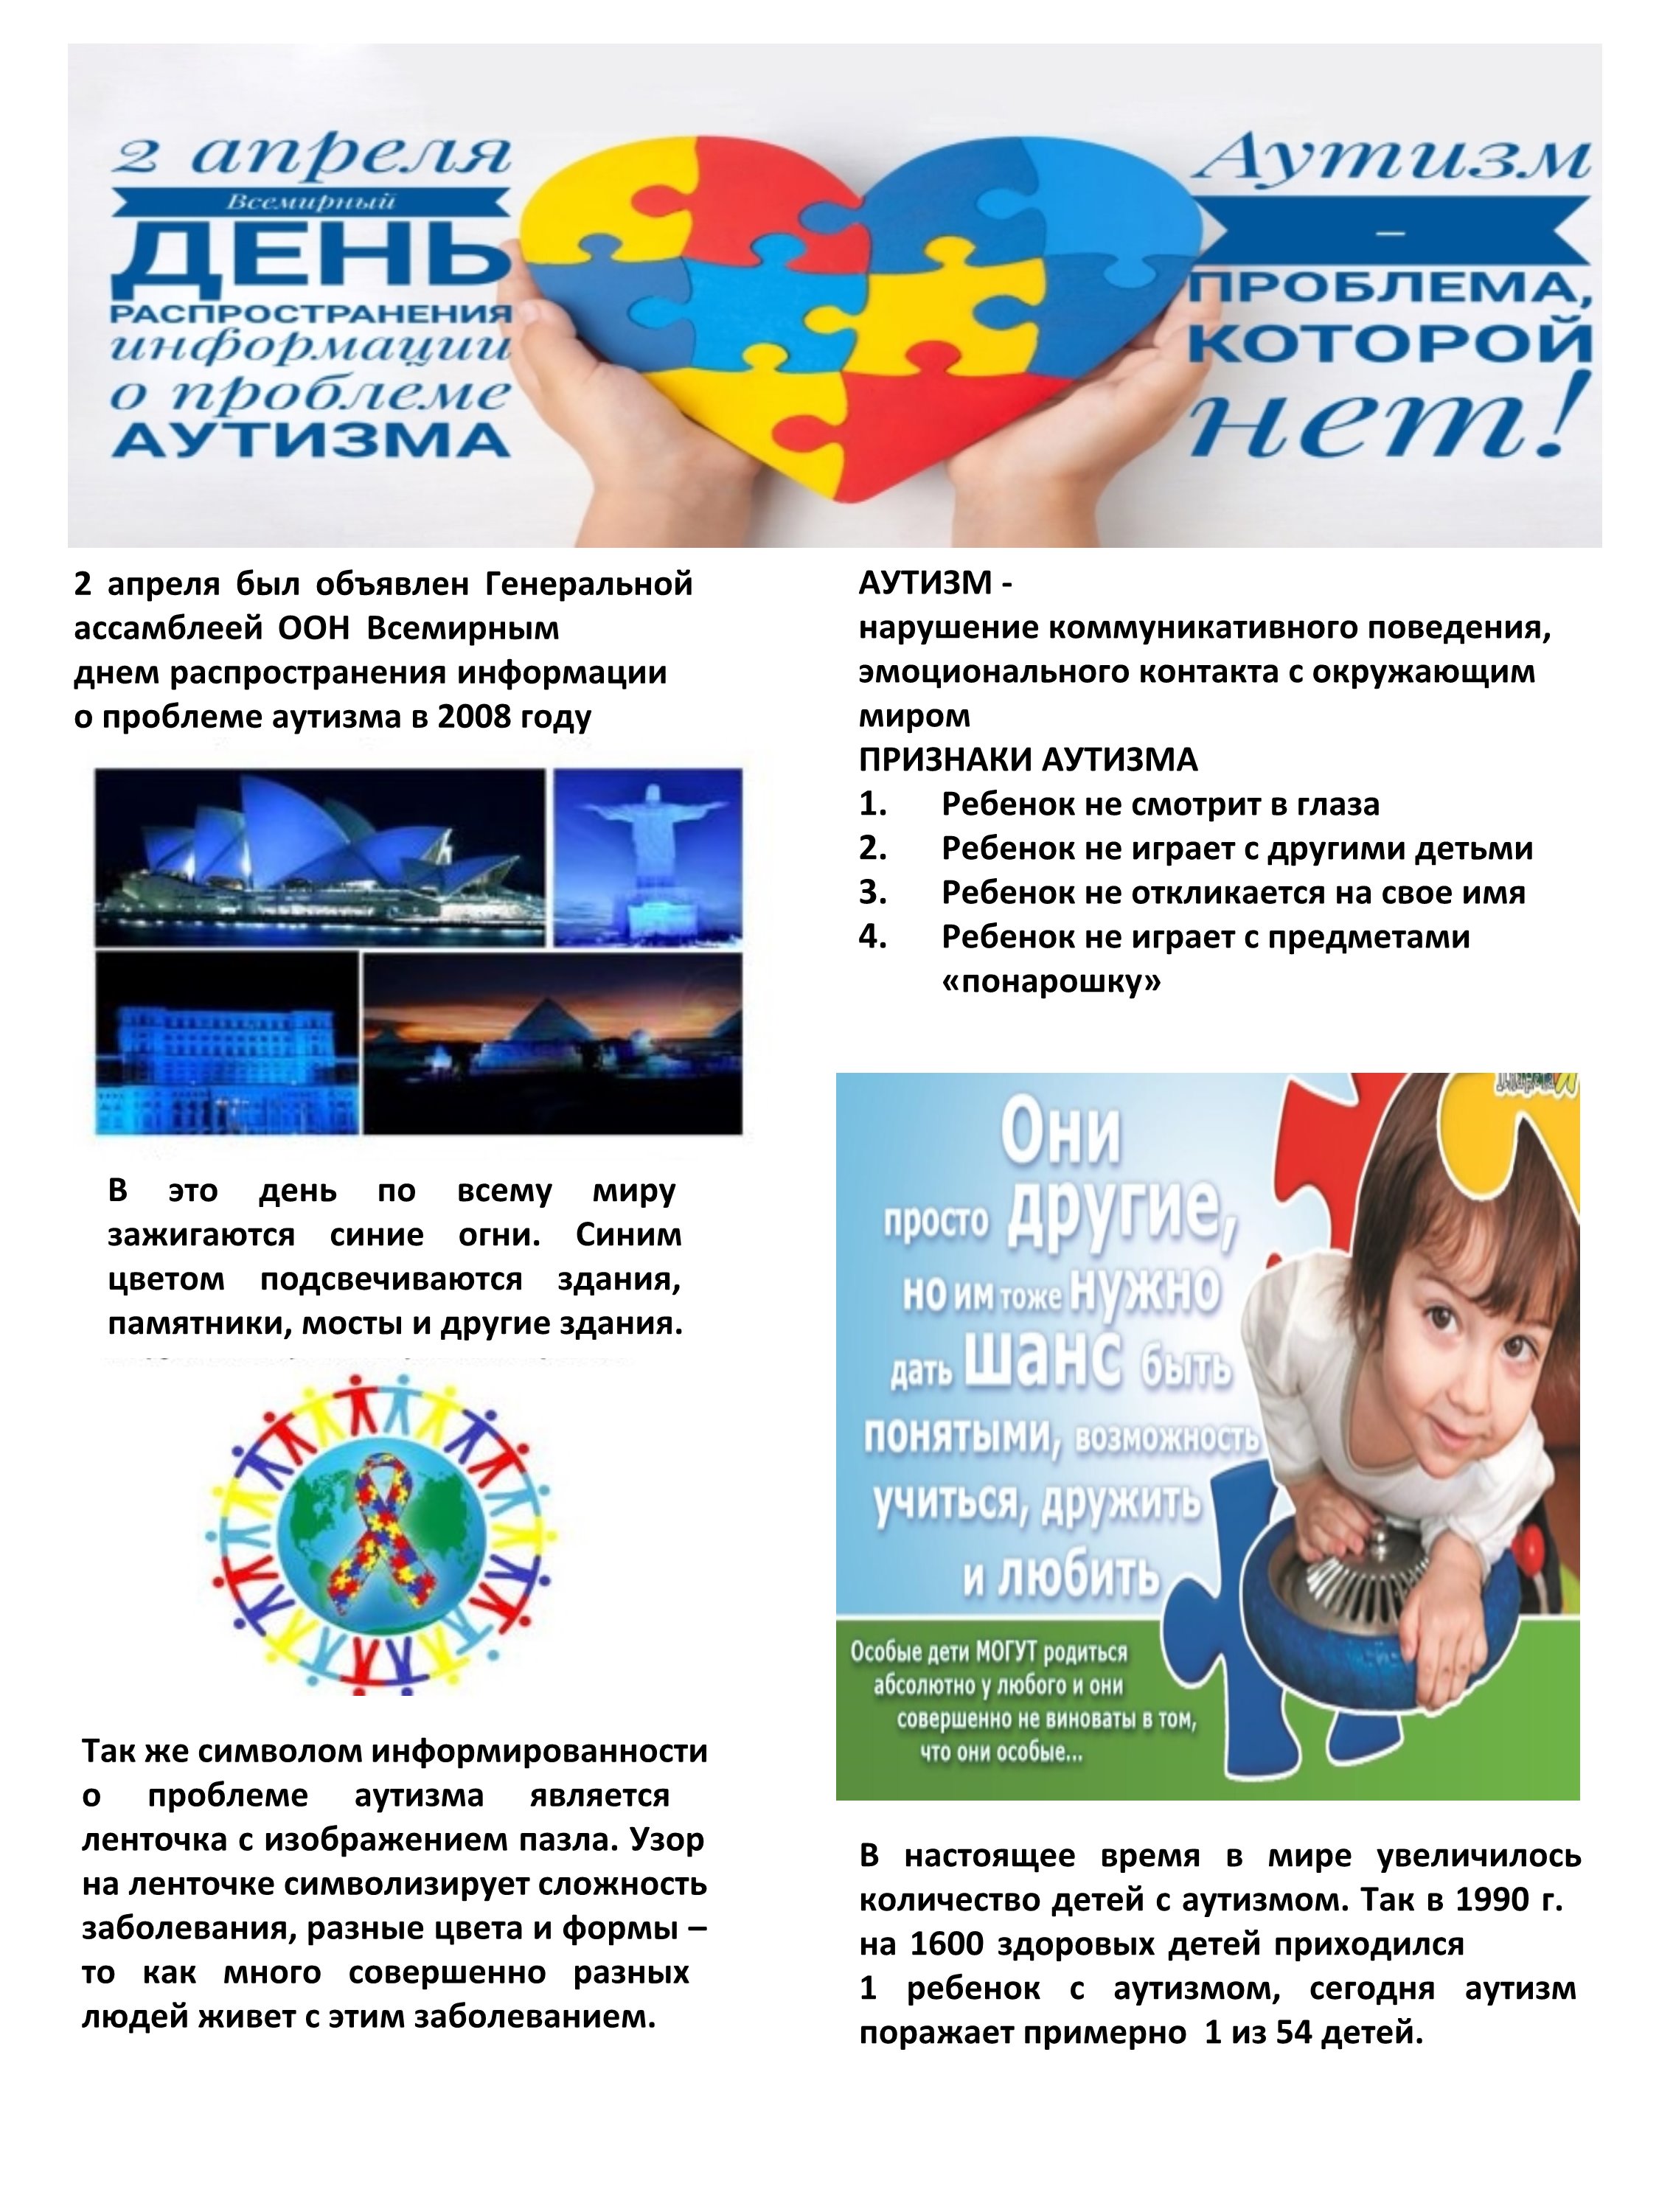 Всемирный день информирования об аутизме